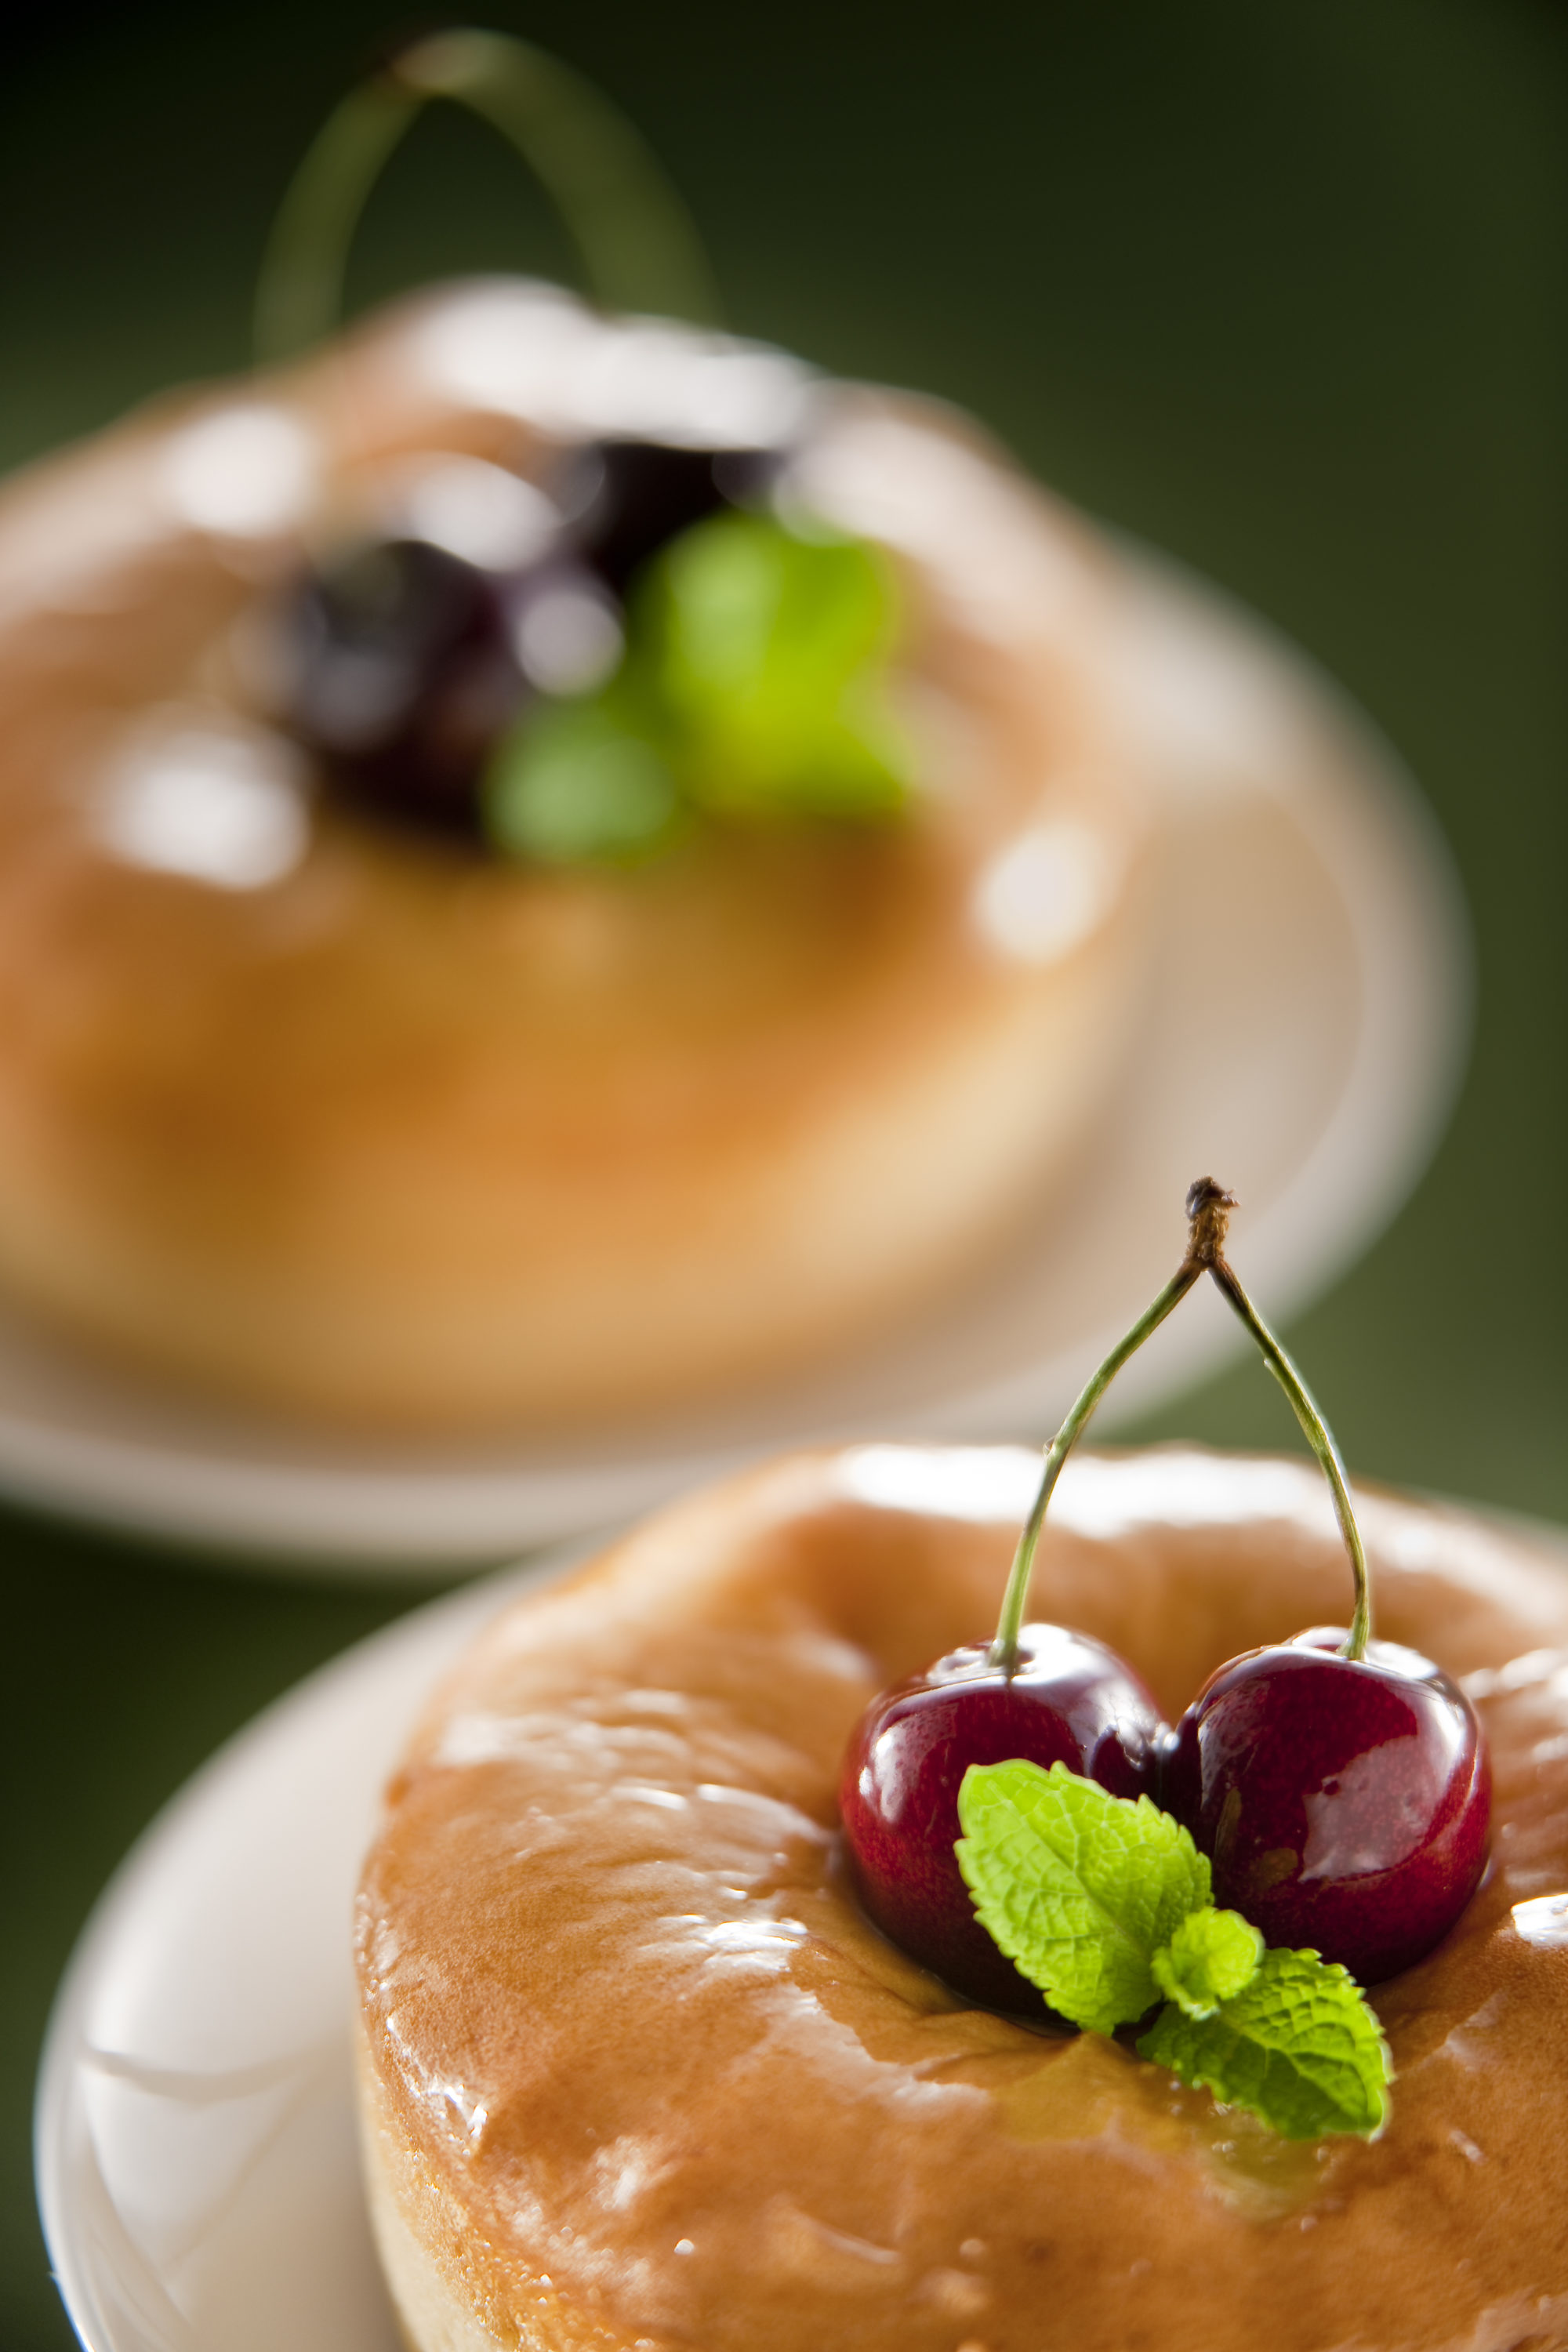 Foto di ciambella ricoperta di glassa di zucchero e decorata con ciliege